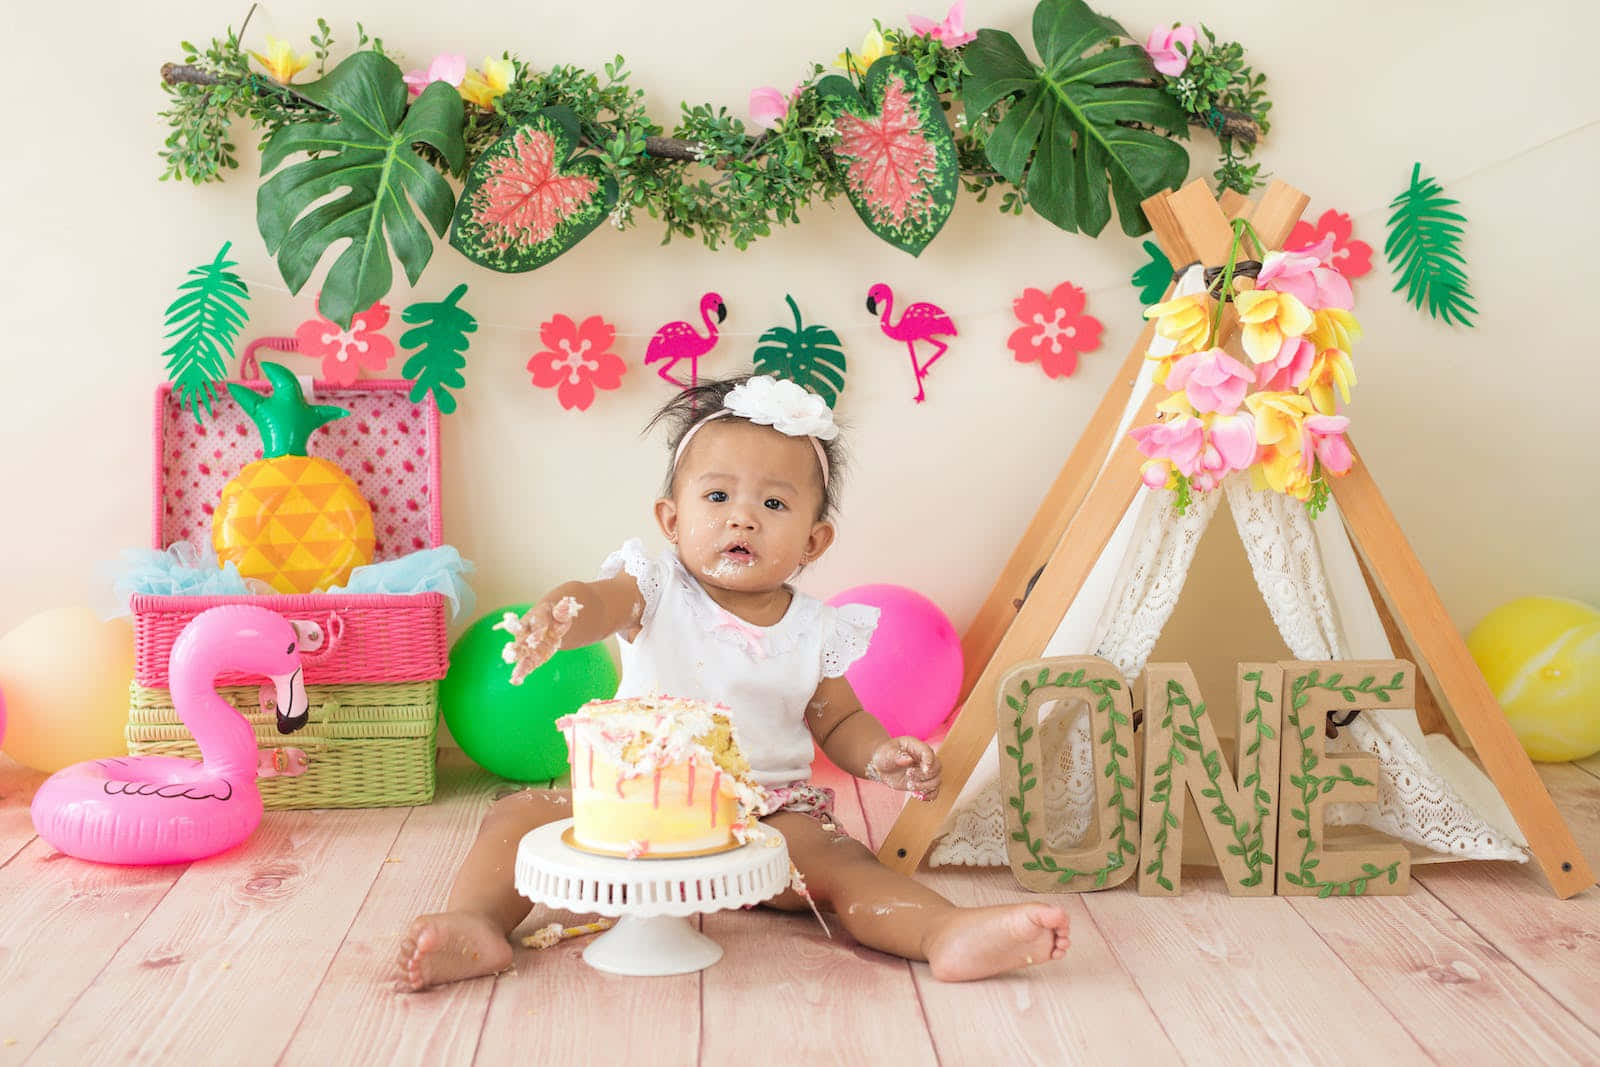 Imagende Un Bebé En Su Primer Cumpleaños Destrozando Un Pastel